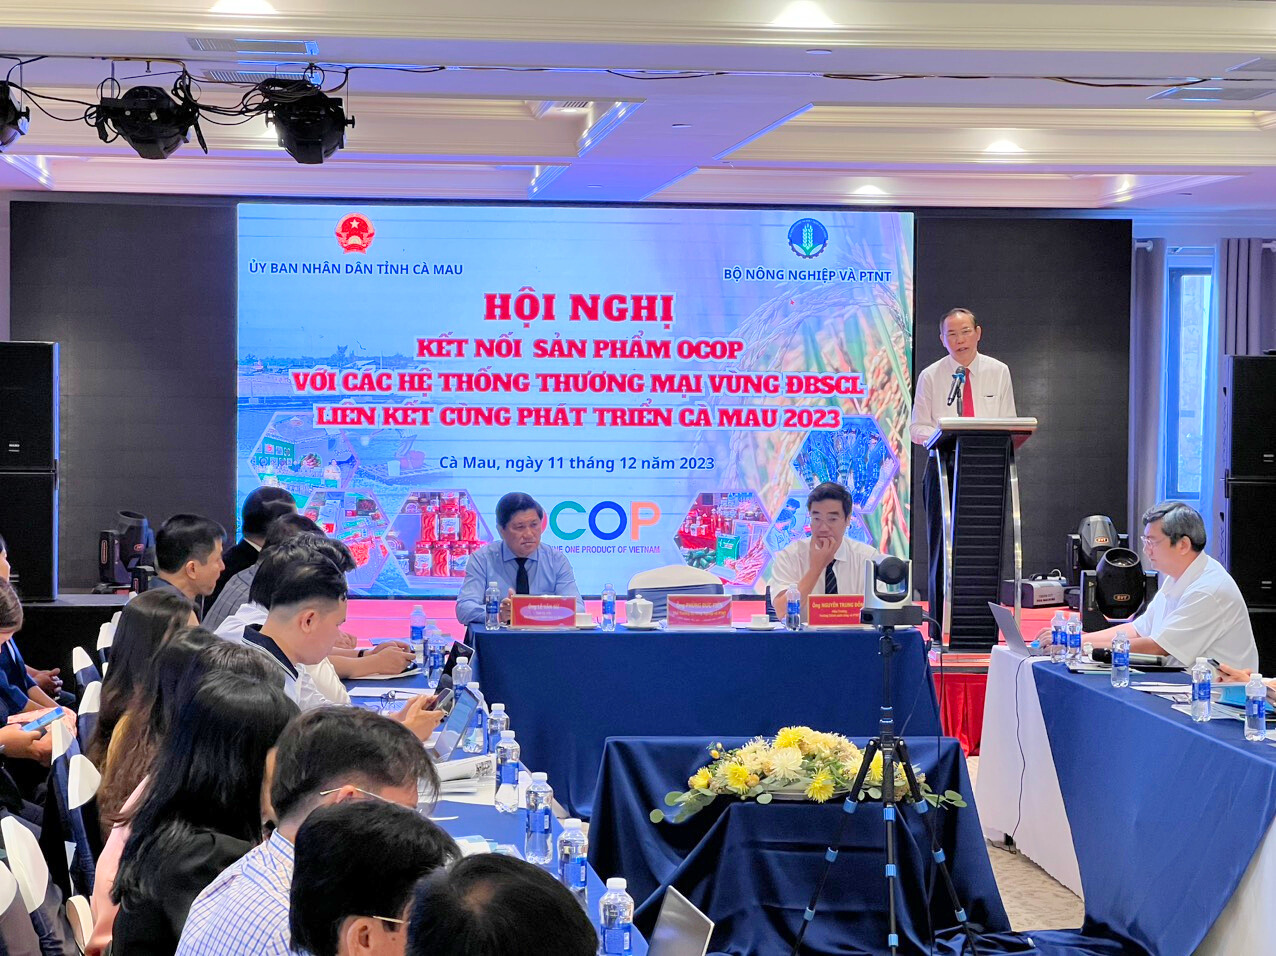 Hội nghị kết nối sản phẩm OCOP với các hệ thống thương mại vùng Đồng bằng sông Cửu Long